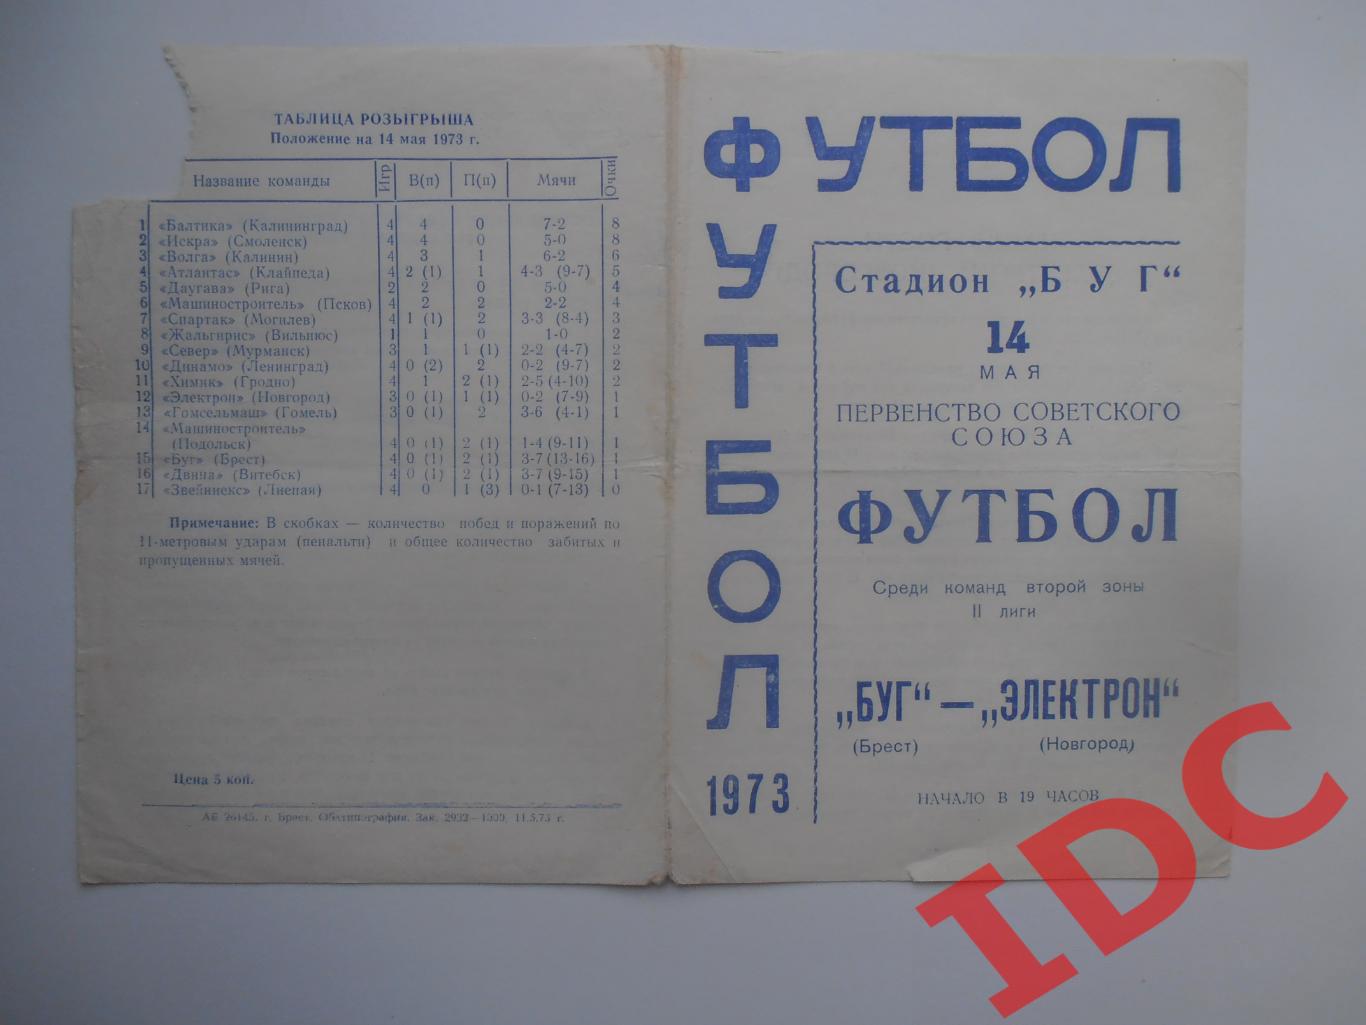 Буг Брест-Электрон Новгород 14 мая 1973